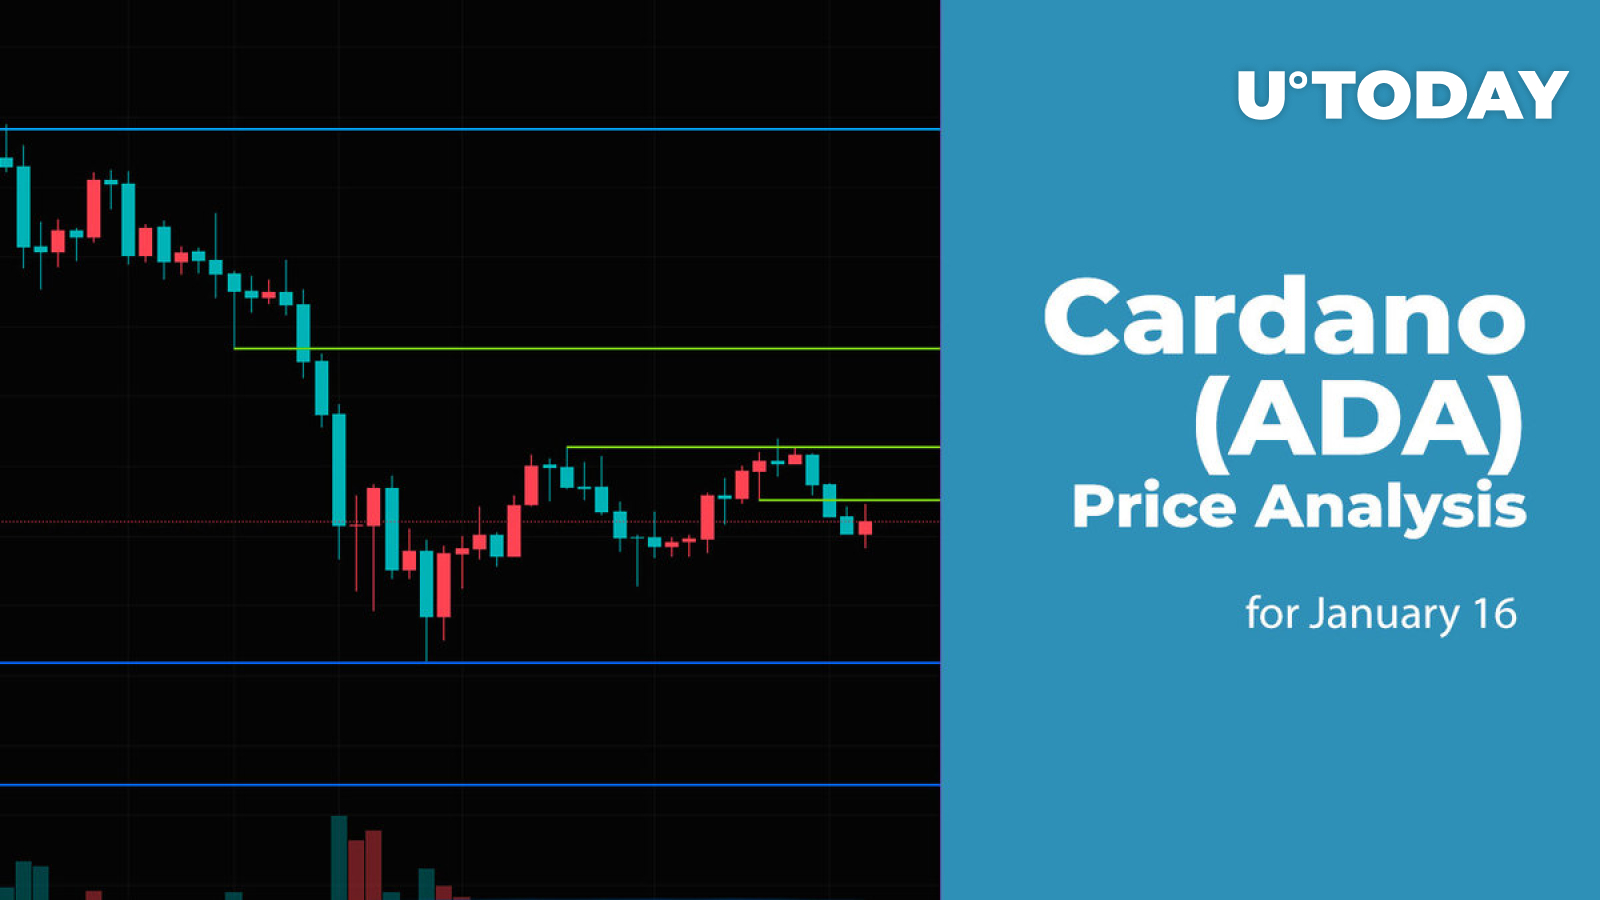 Cardano (ADA) Price Analysis for January 16